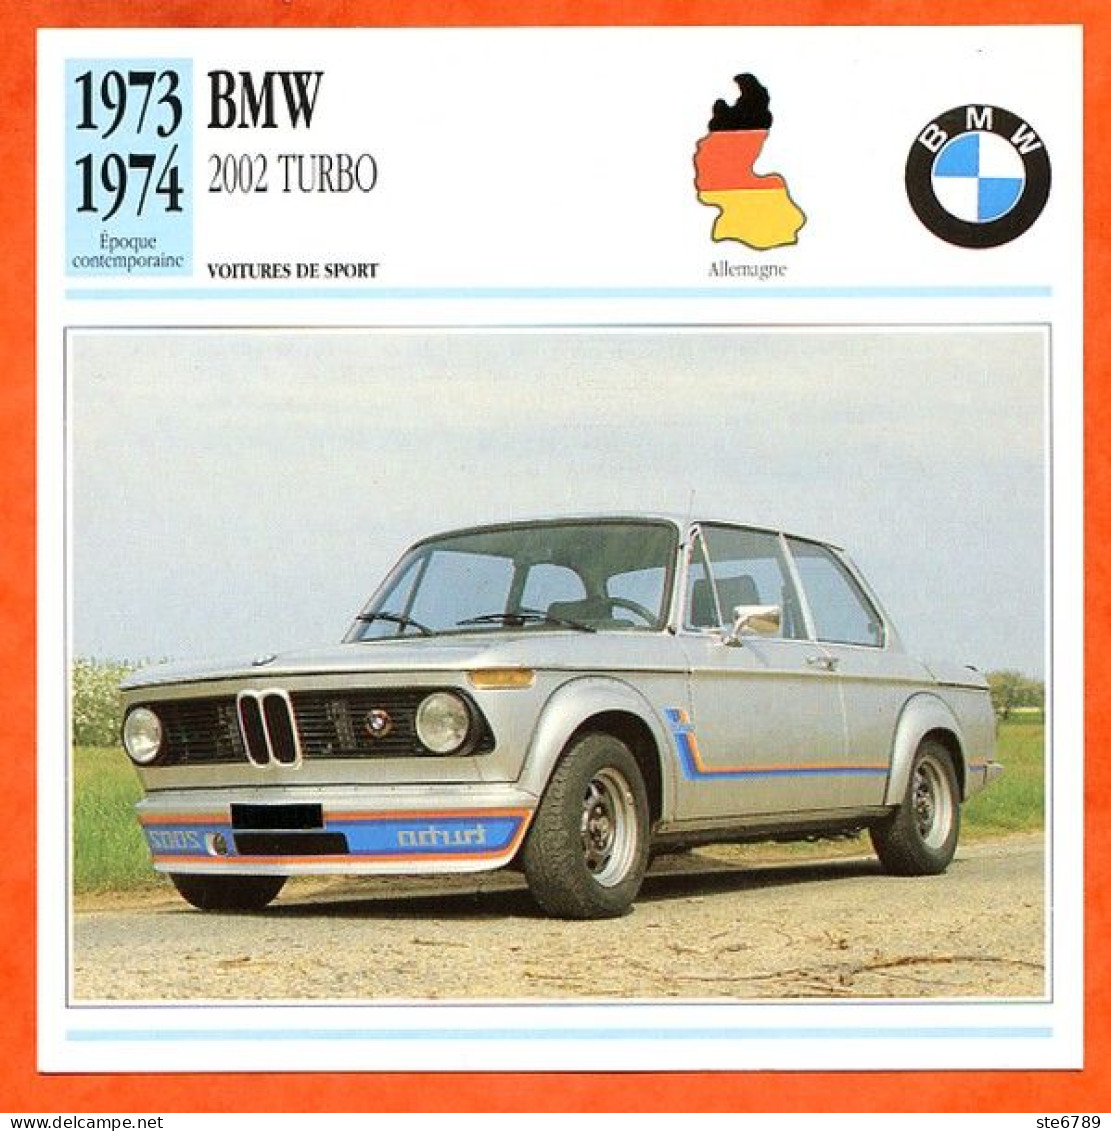 BMW 2002 TURBO 1973 Voiture De Sport Allemagne Fiche Technique Automobile - Autos